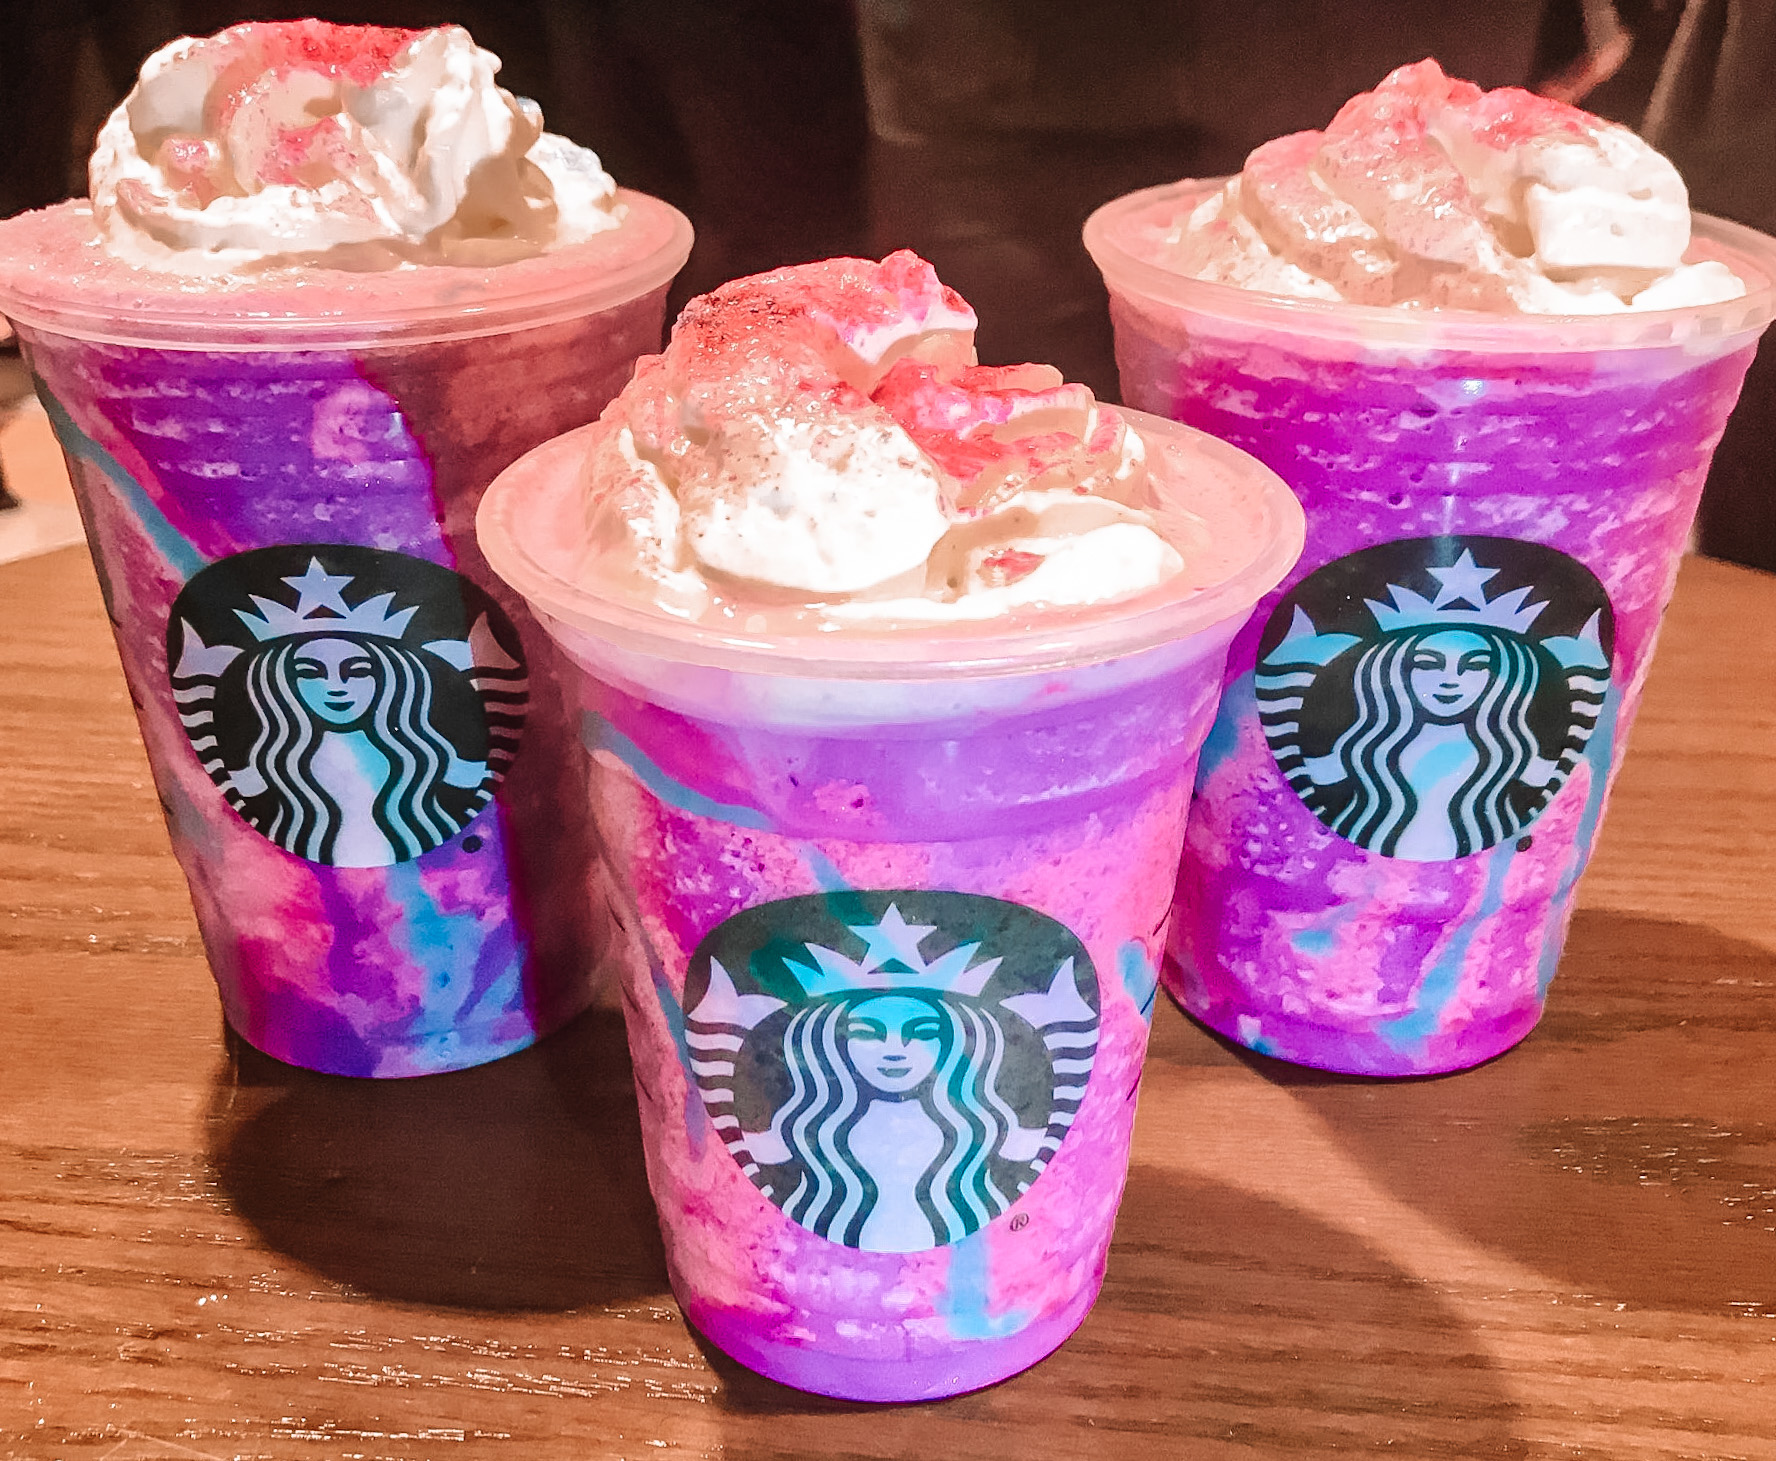 Starbucks Unicorn Frappuccino Review